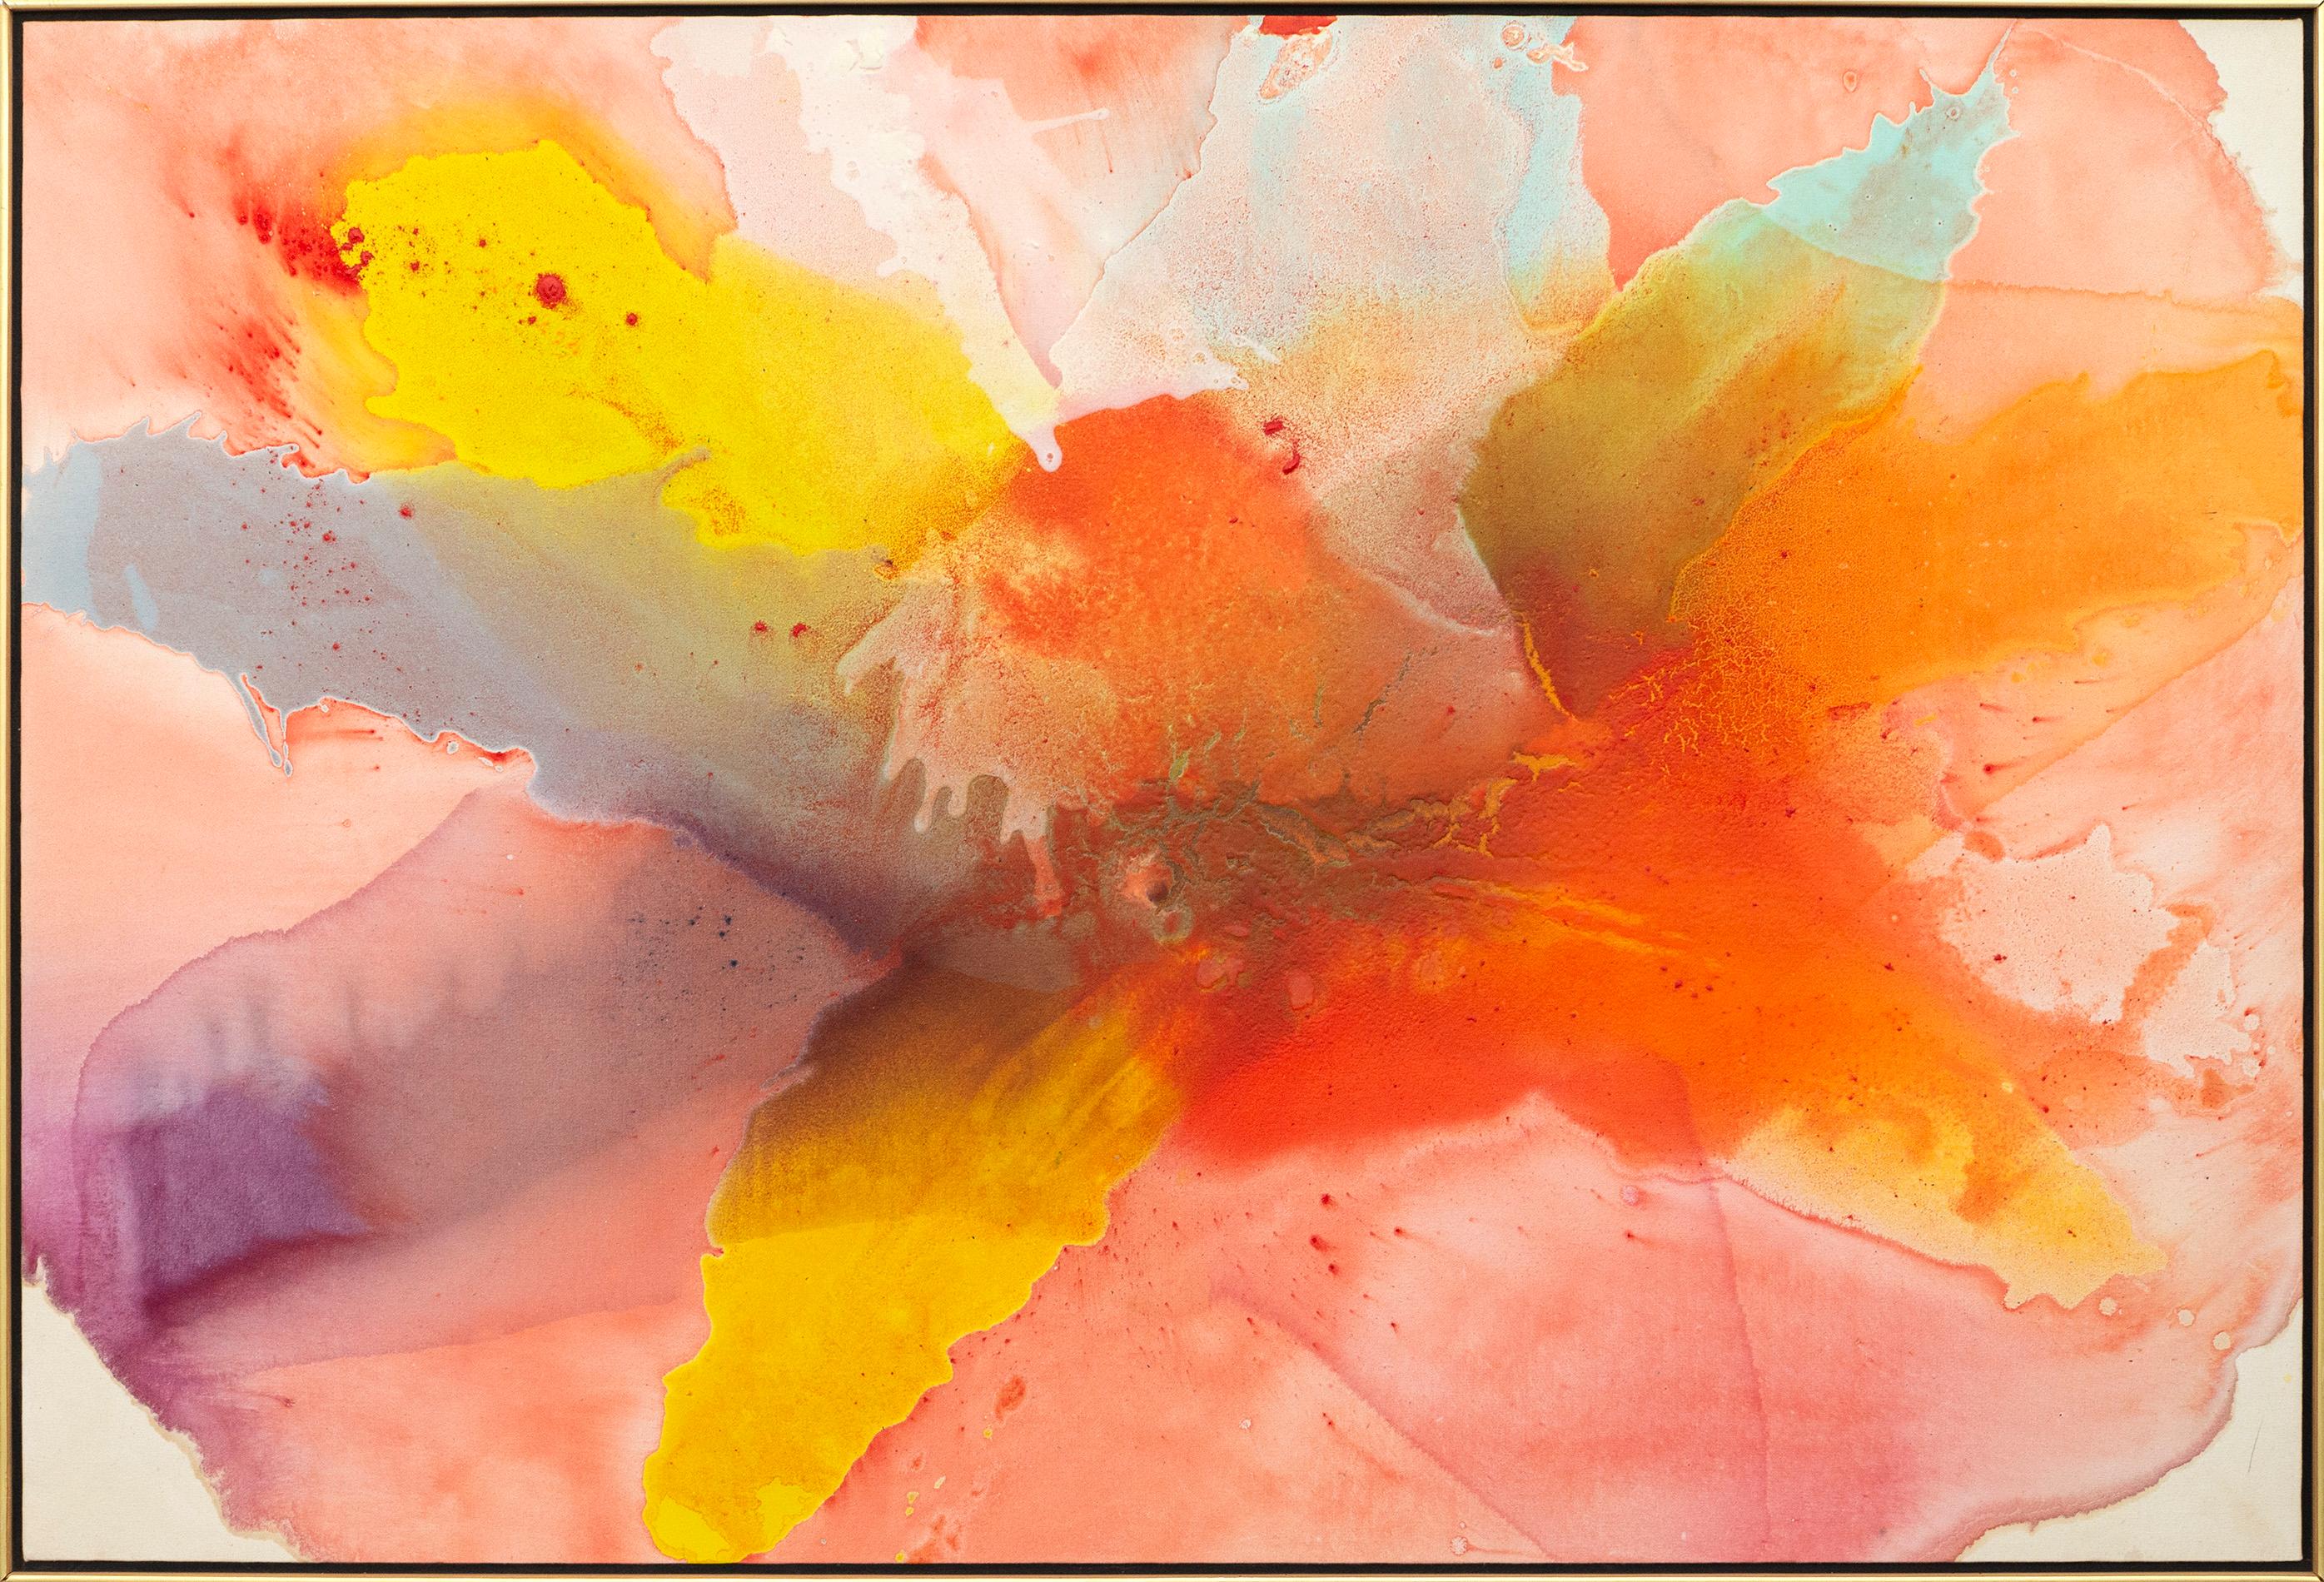 Chanson - groß, farbenfroh, abstrakt, gestisch, Acryl auf Leinwand – Painting von Harold Feist